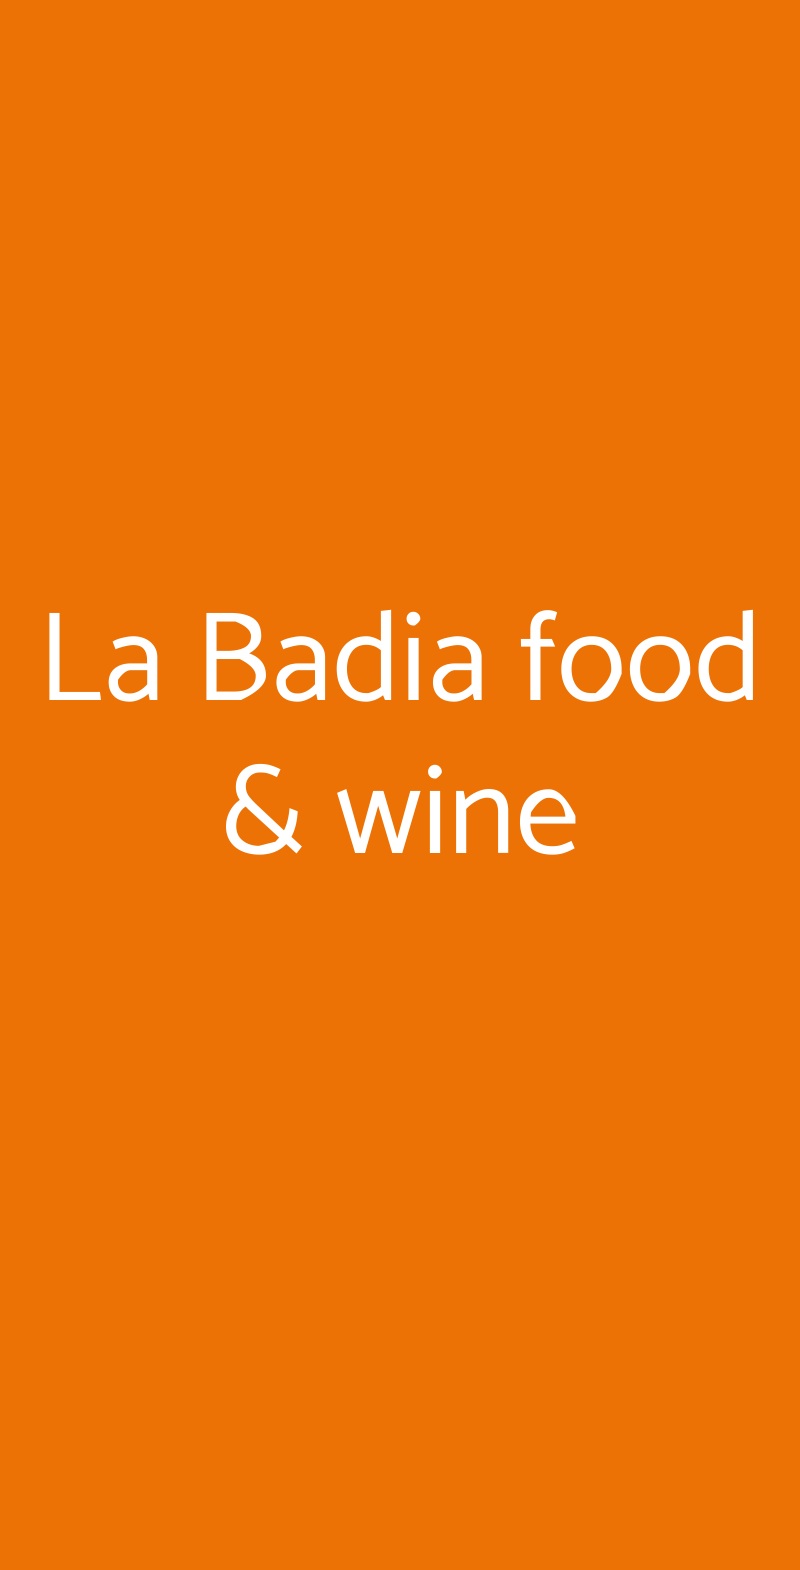 La Badia food & wine Roma menù 1 pagina